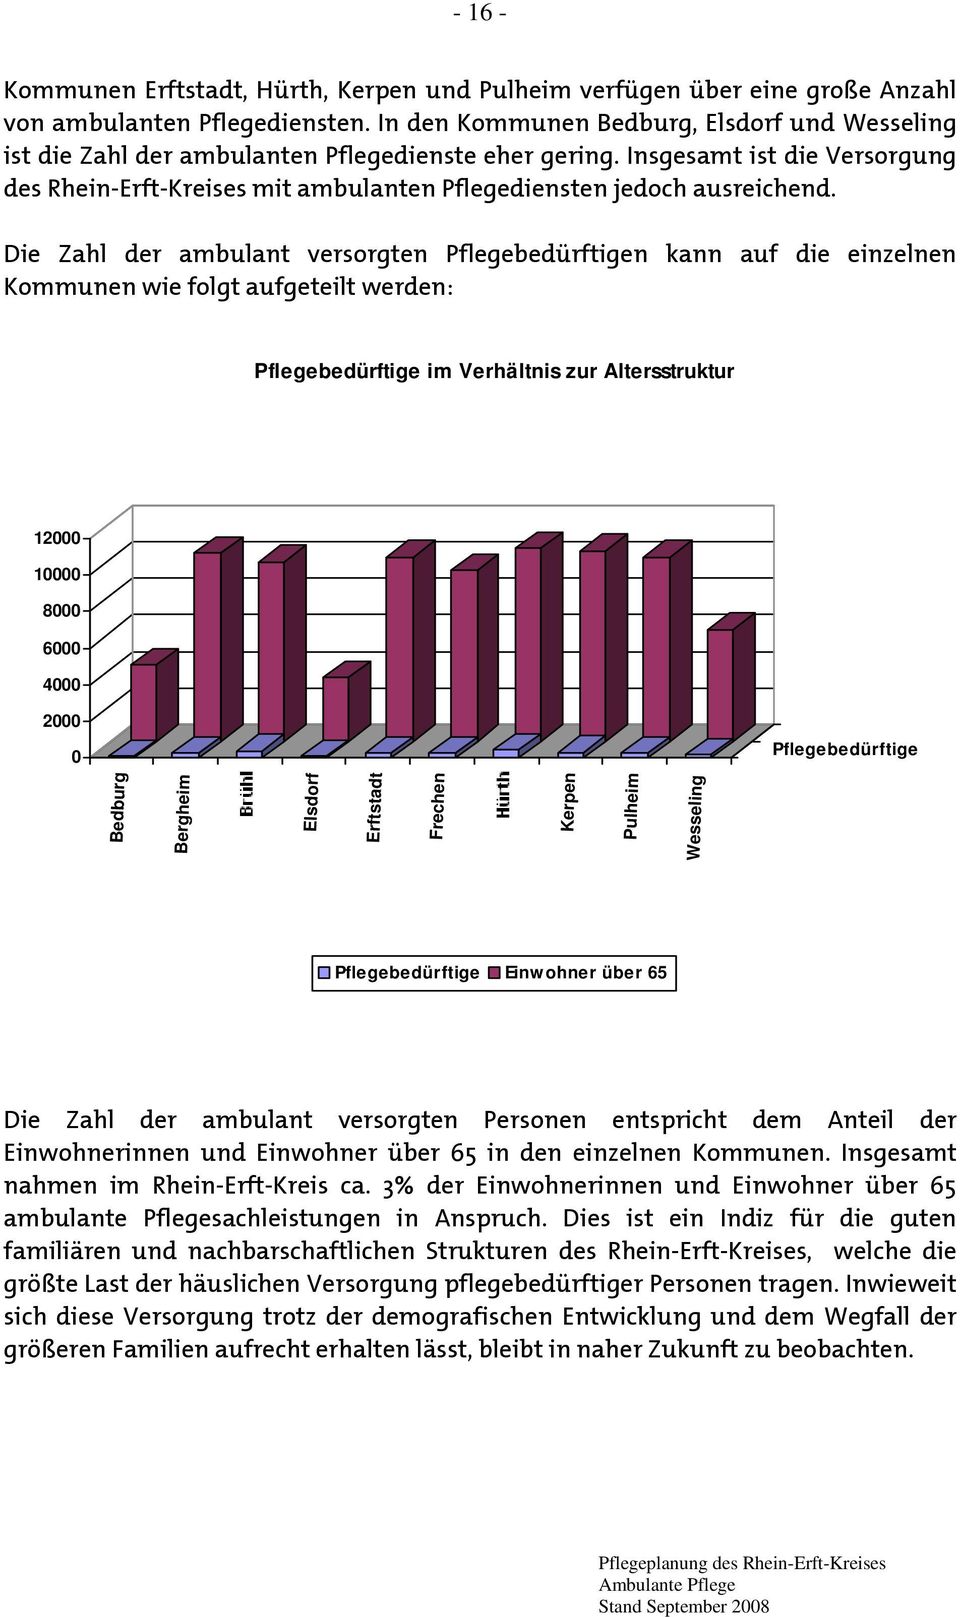 Insgesamt ist die Versorgung des Rhein-Erft-Kreises mit ambulanten Pflegediensten jedoch ausreichend.